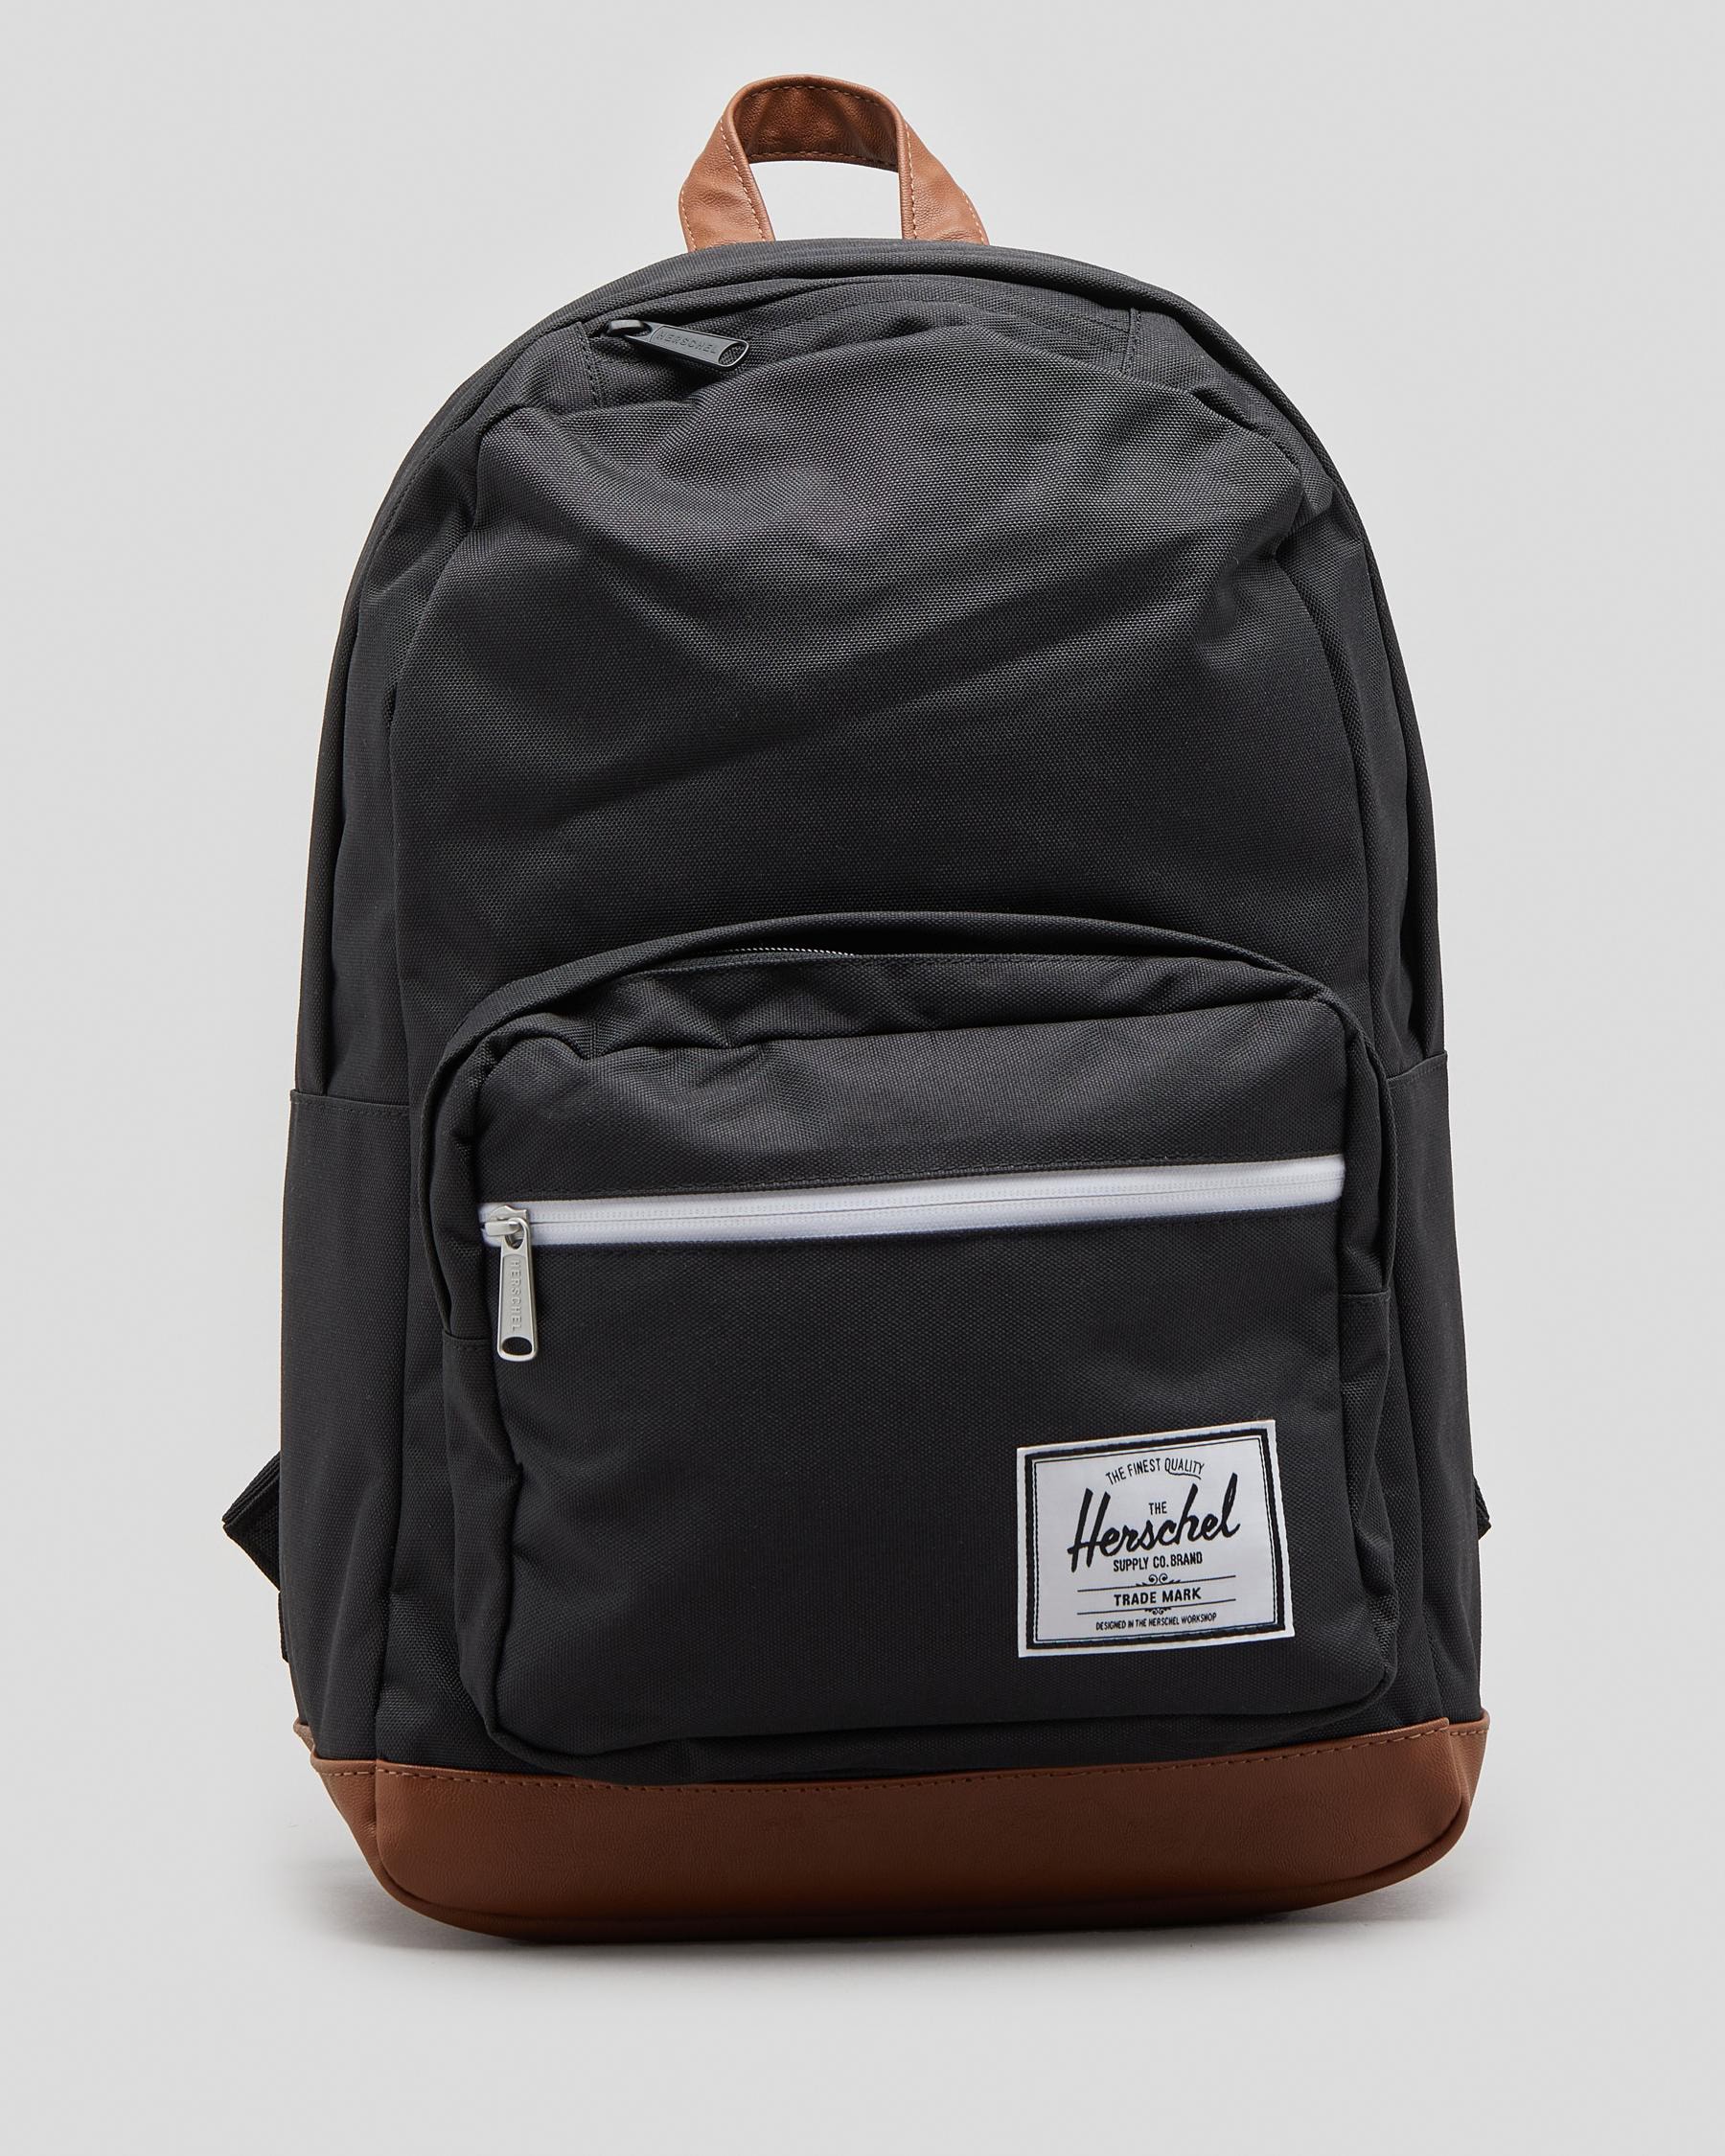 Herschel Pop Quiz Backpack In Black/tan - Fast Shipping & Easy Returns ...